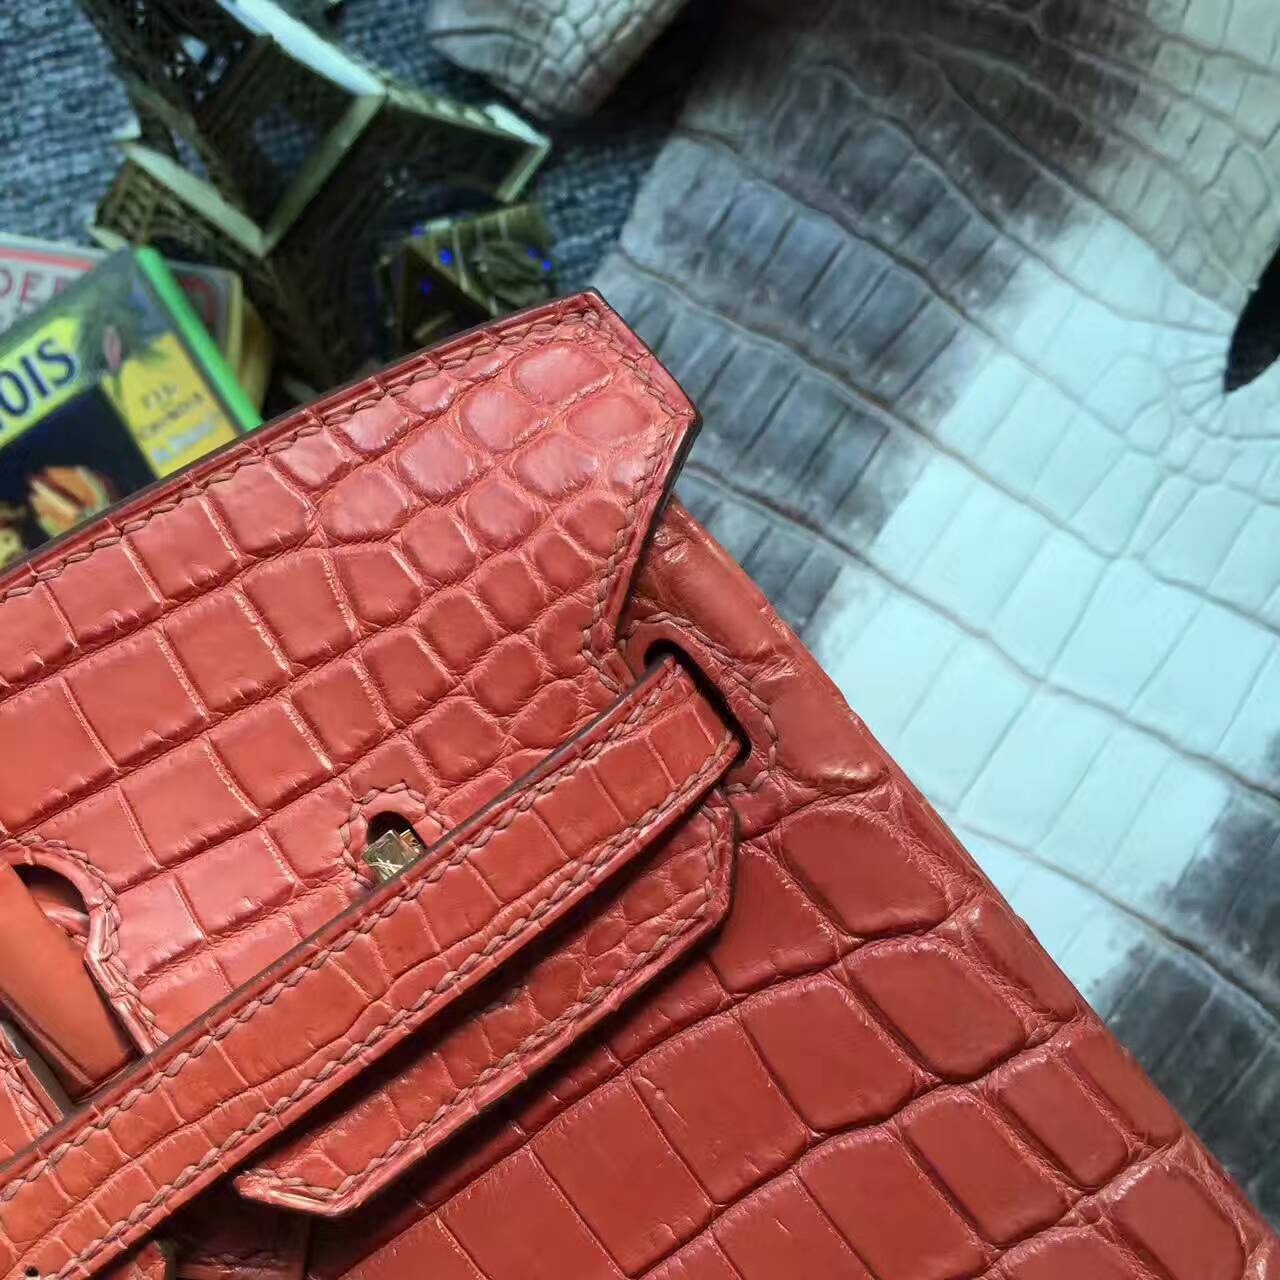 Wholesale Hermes Birkin Bag 25cm in Salmon Red Crocodile Matt Leather